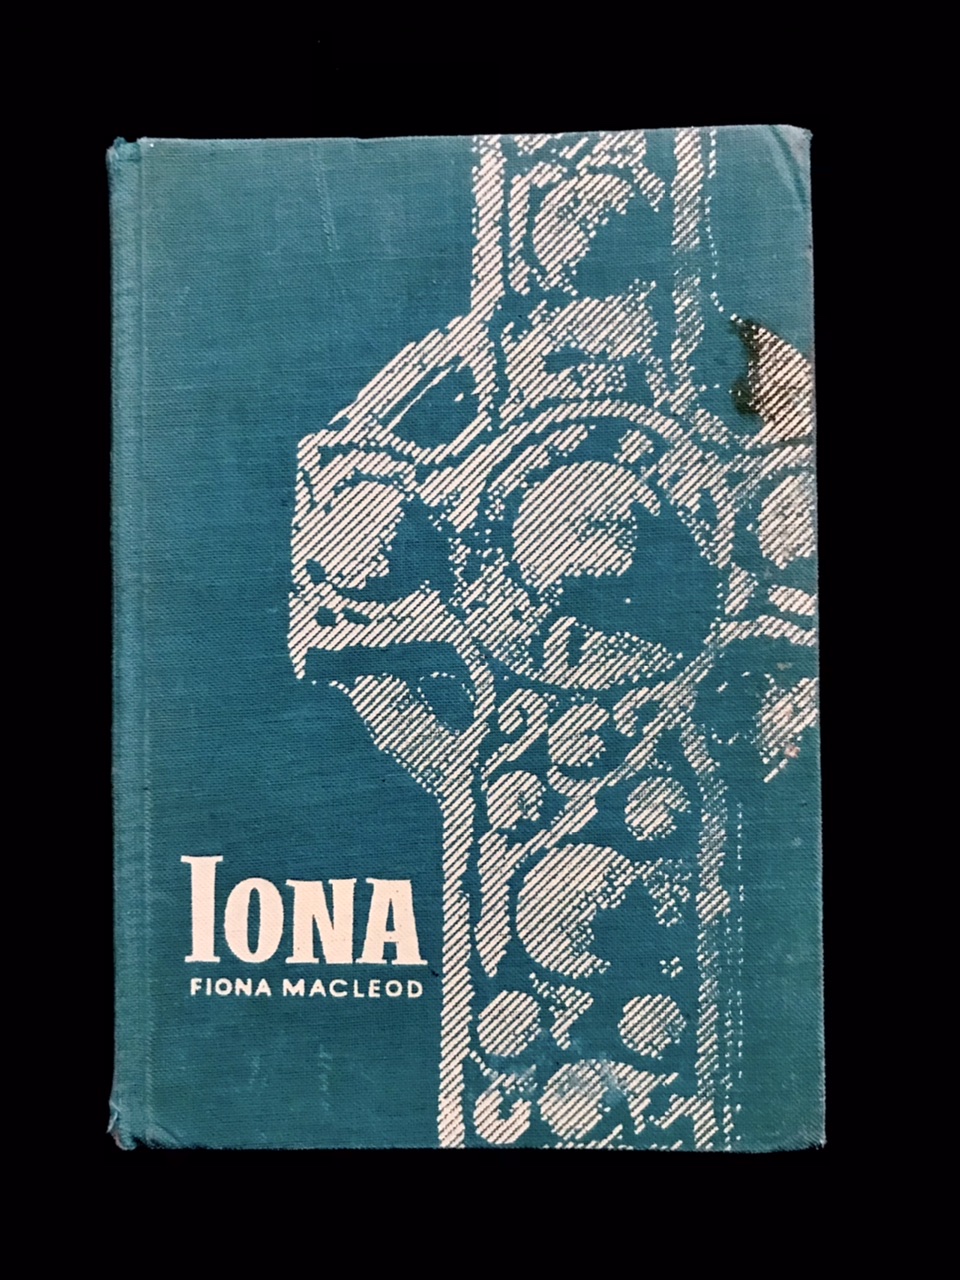 Iona by Fiona Macleod